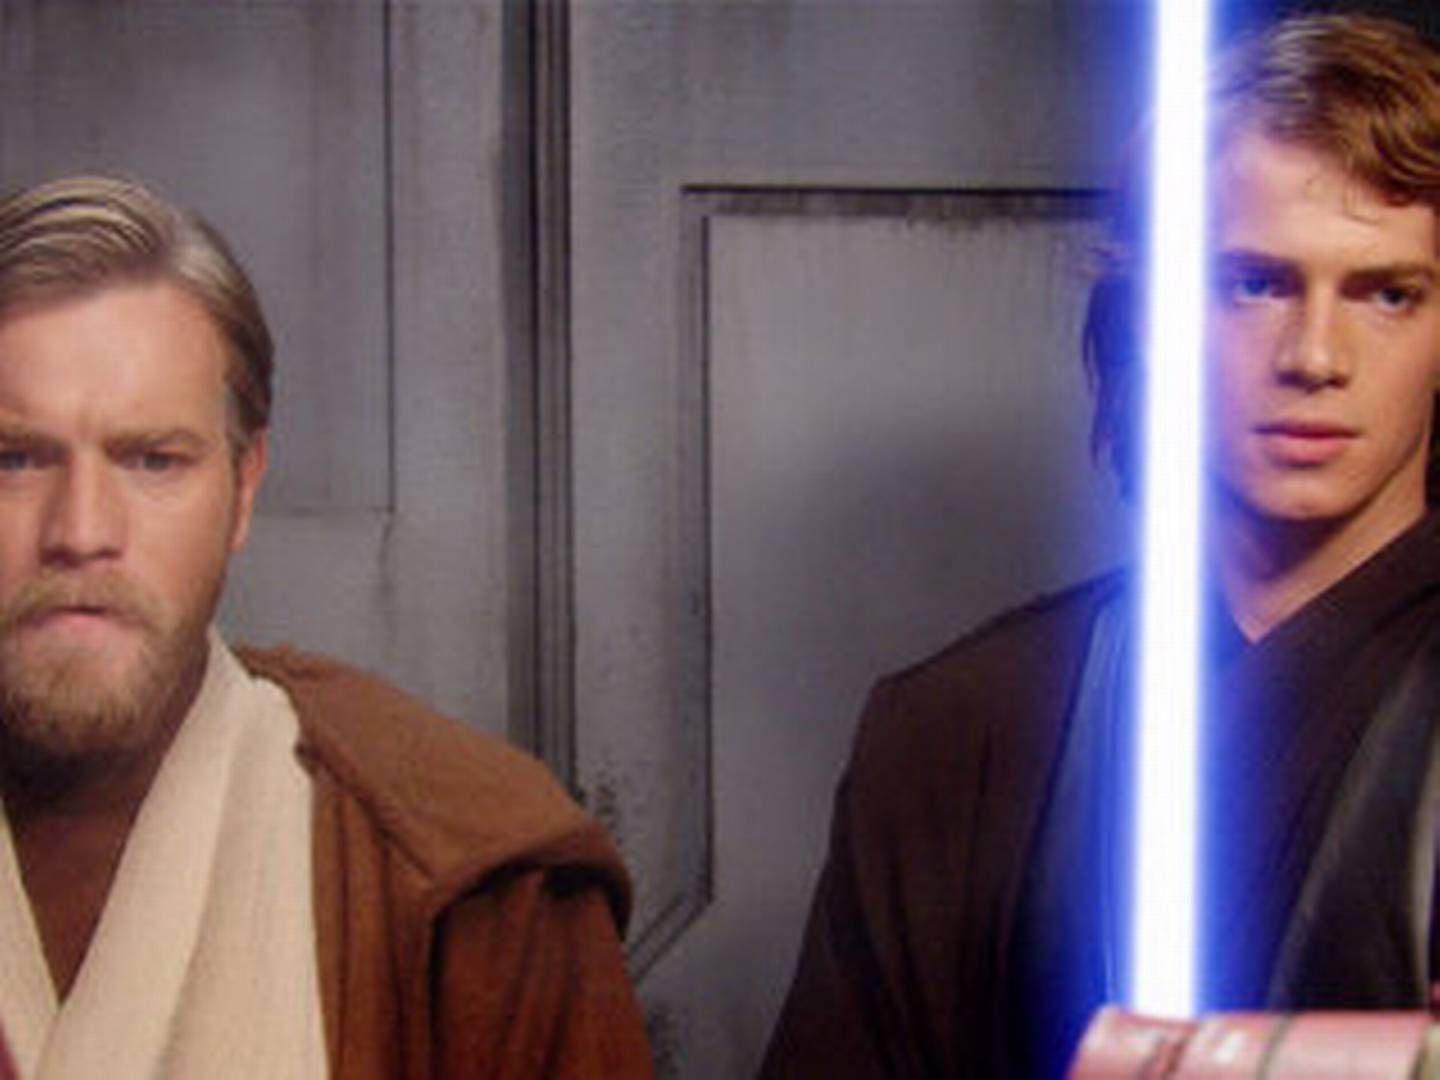 De tre nye Stars Wars-film vil introducere nye karakterer og ikke videreføre den velkendte fortælling om Skywalker-familien, oplyser Disney. | Foto: /ritzau/AP/Ap